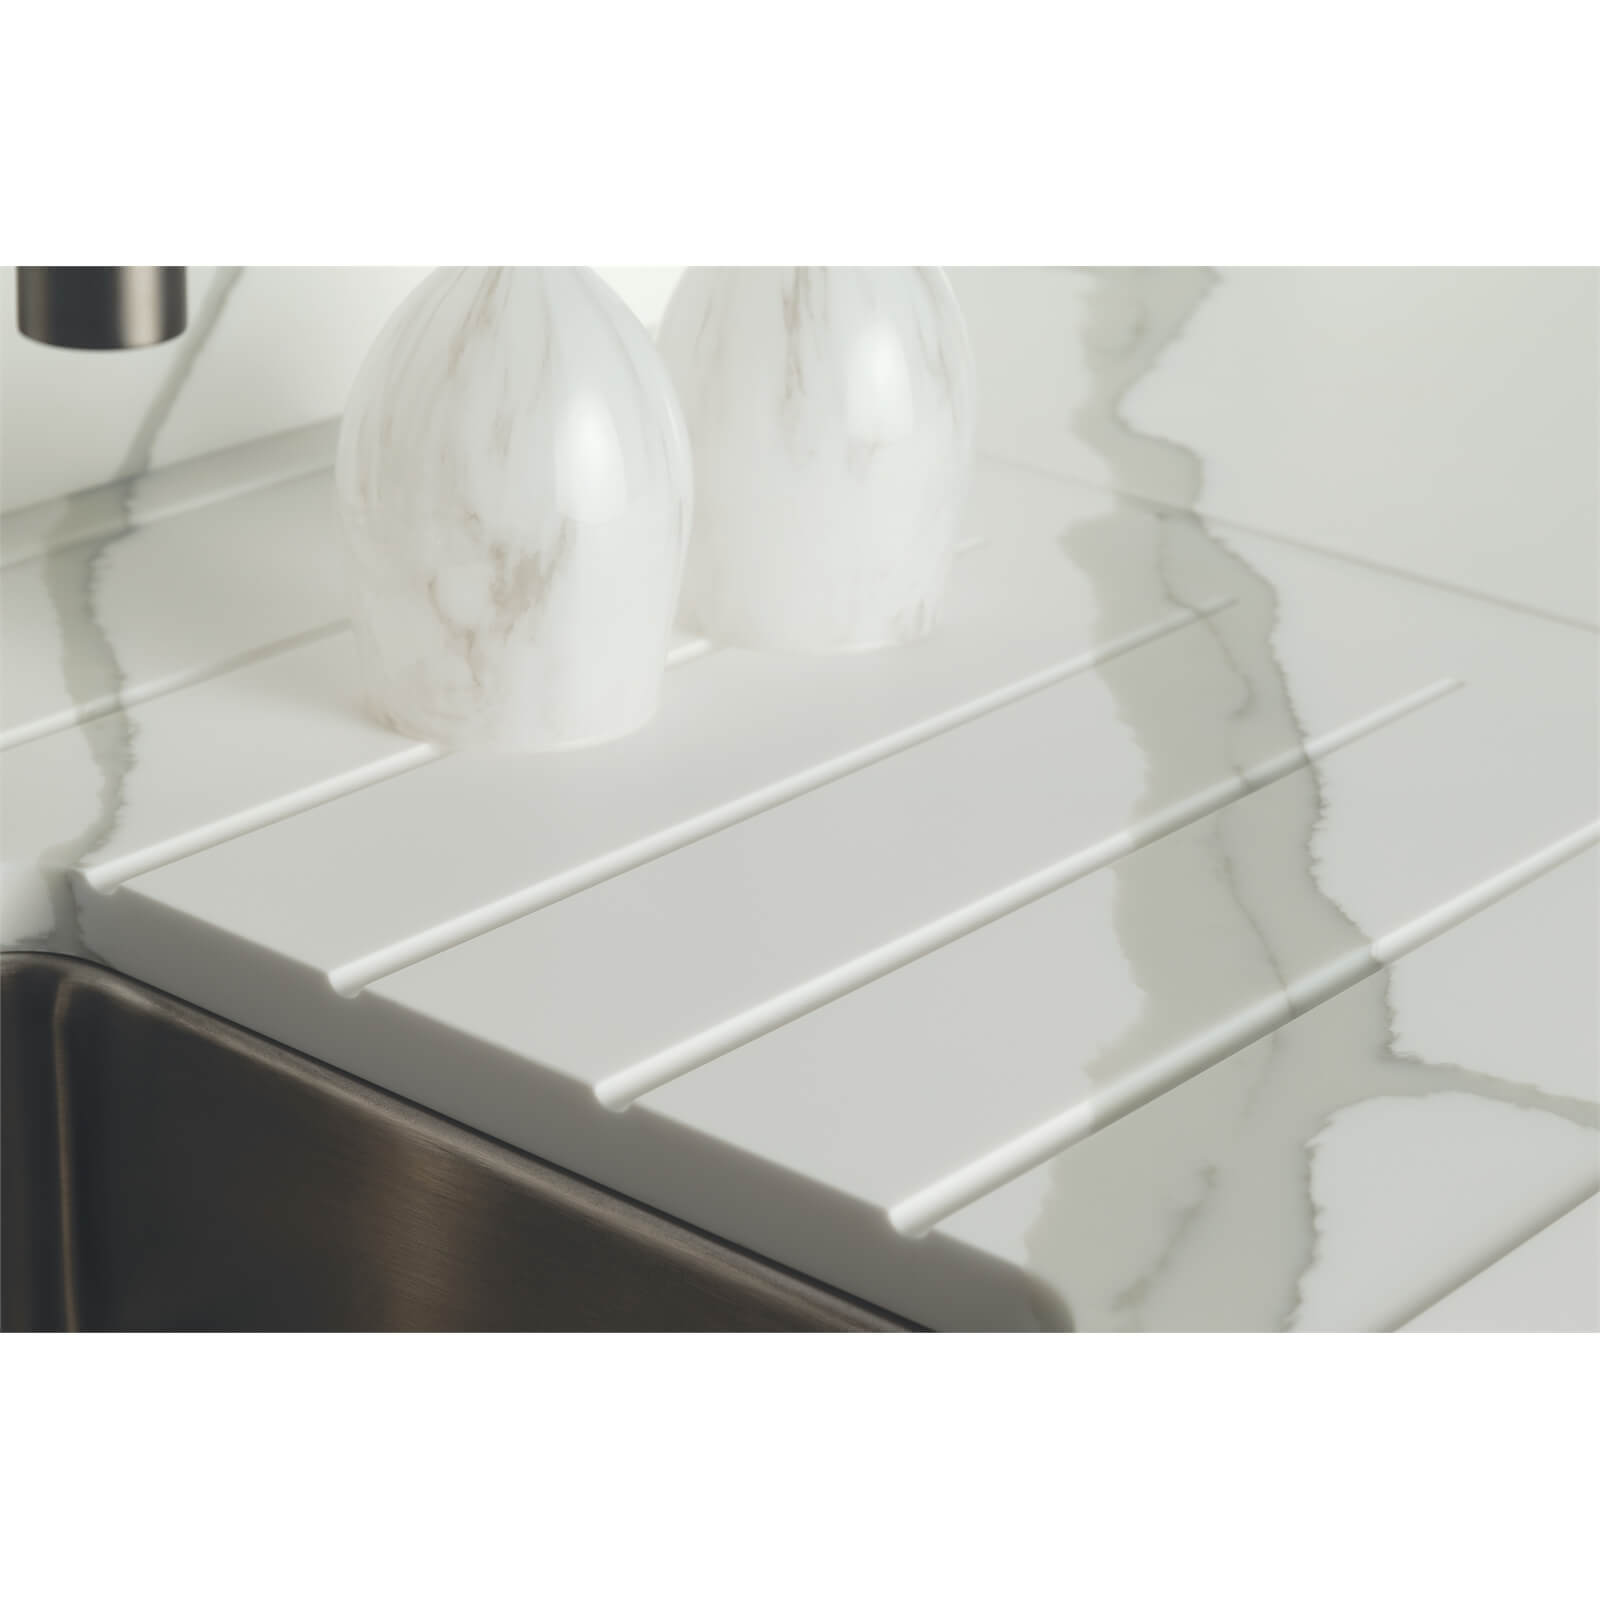 Minerva Calcutta White Kitchen Sink Worktop - Left Hand Bowl - 3050 x 650 x 25mm